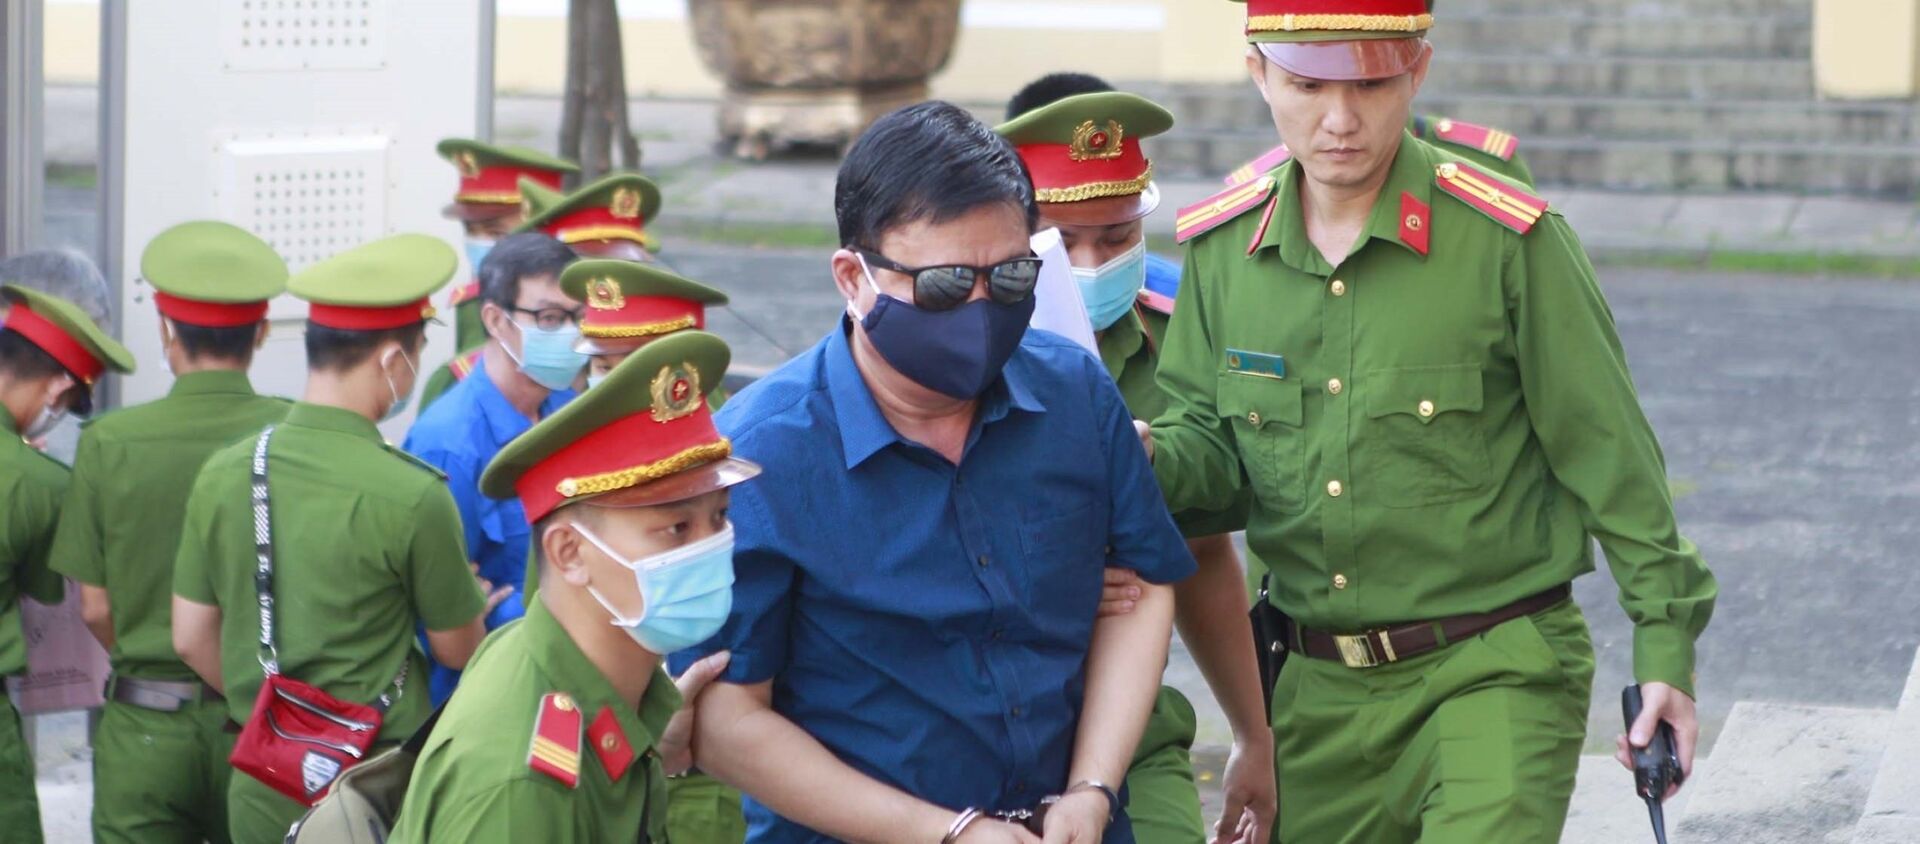 Bị cáo Đinh La Thăng (nguyên Bộ trưởng Bộ Giao thông Vận tải từ tháng 8/2011 - 2/2016) được đưa đến phiên tòa xét xử. - Sputnik Việt Nam, 1920, 14.12.2020